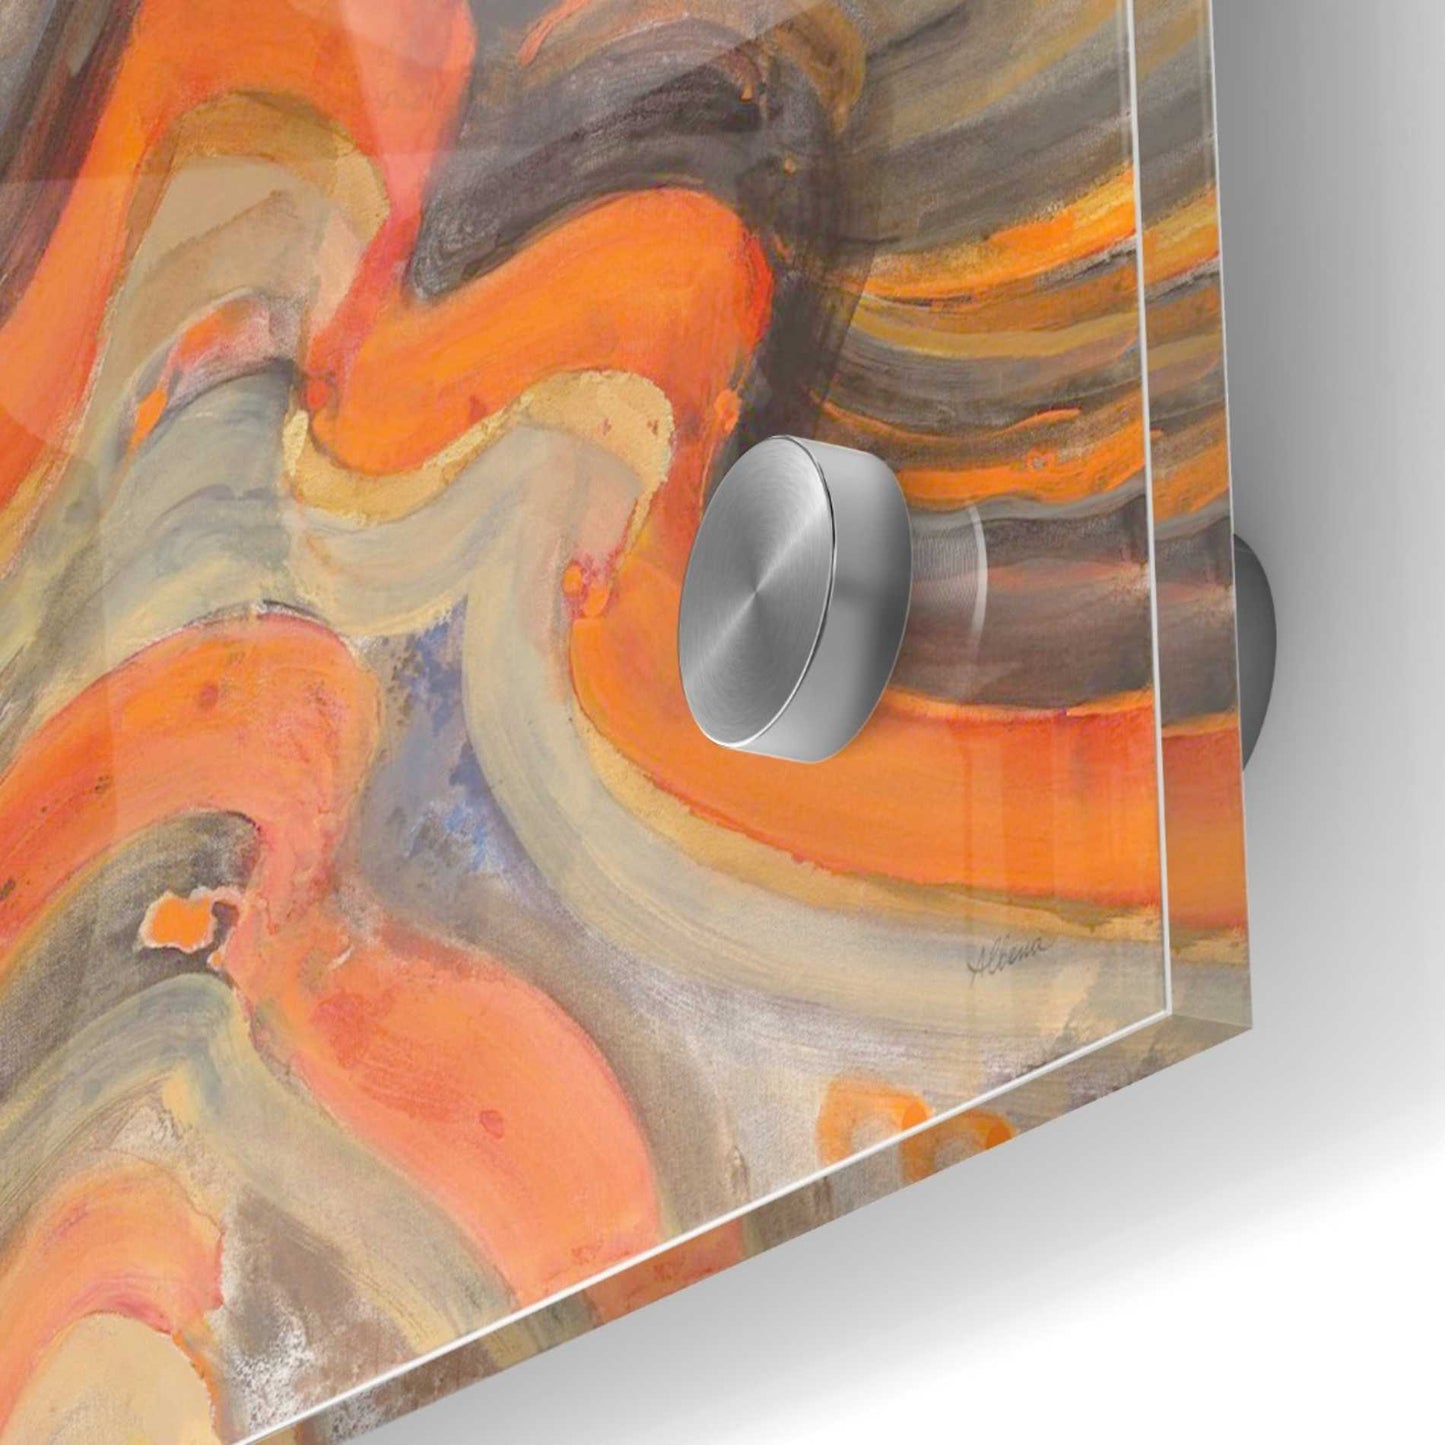 Epic Art 'Floating Lava' by Albena Hristova, Acrylic Glass Wall Art,36x36